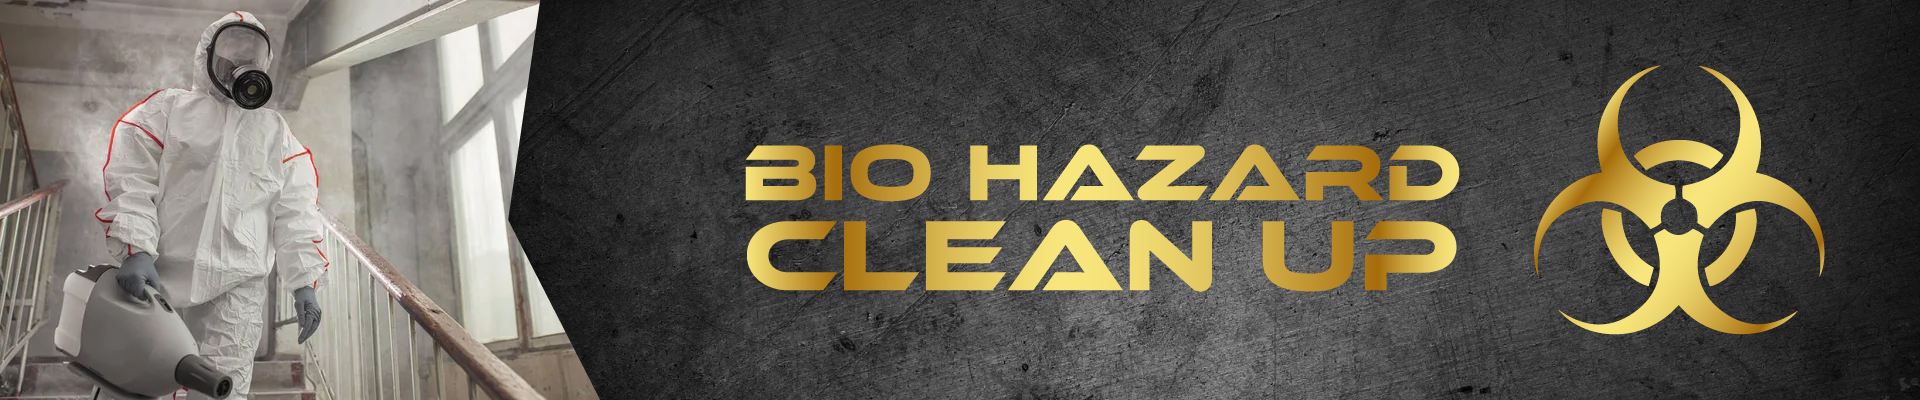 Bio Hazard Clean Up